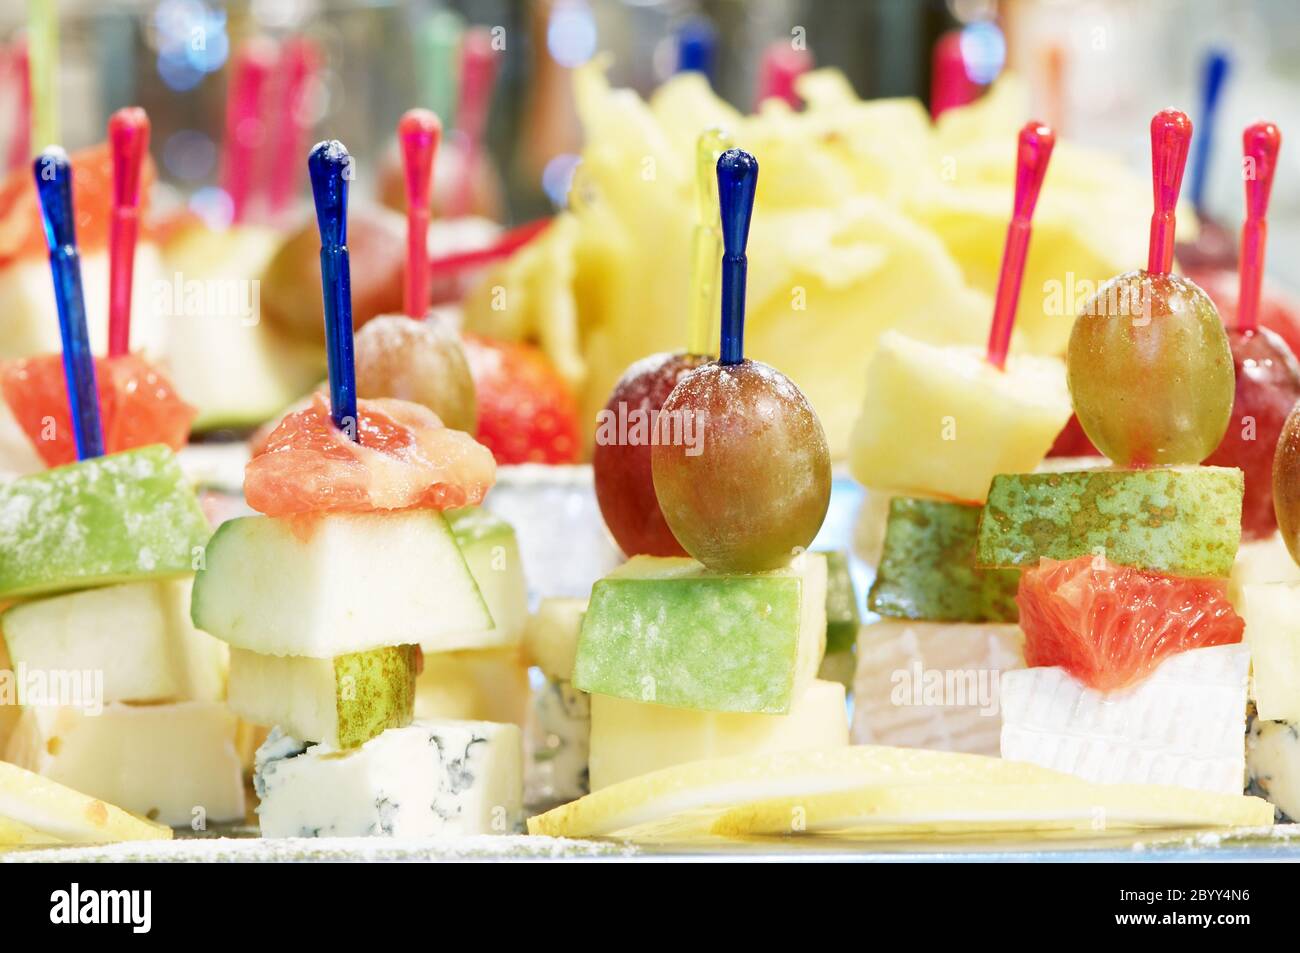 Skewerd Fruit Snack Stock Photo